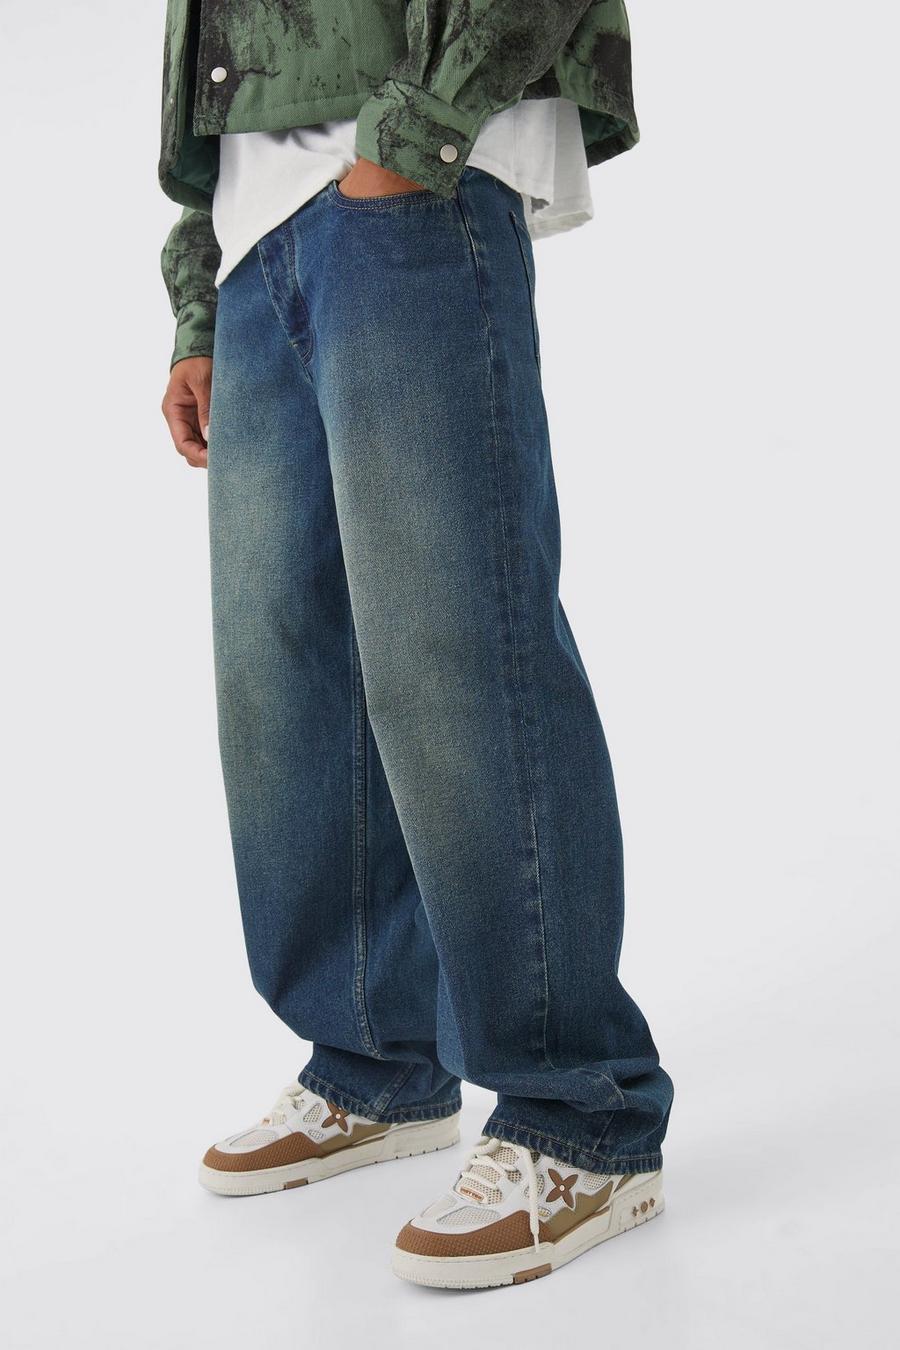 Jeans extra comodi in denim rigido con applique stile Graffiti, Antique wash